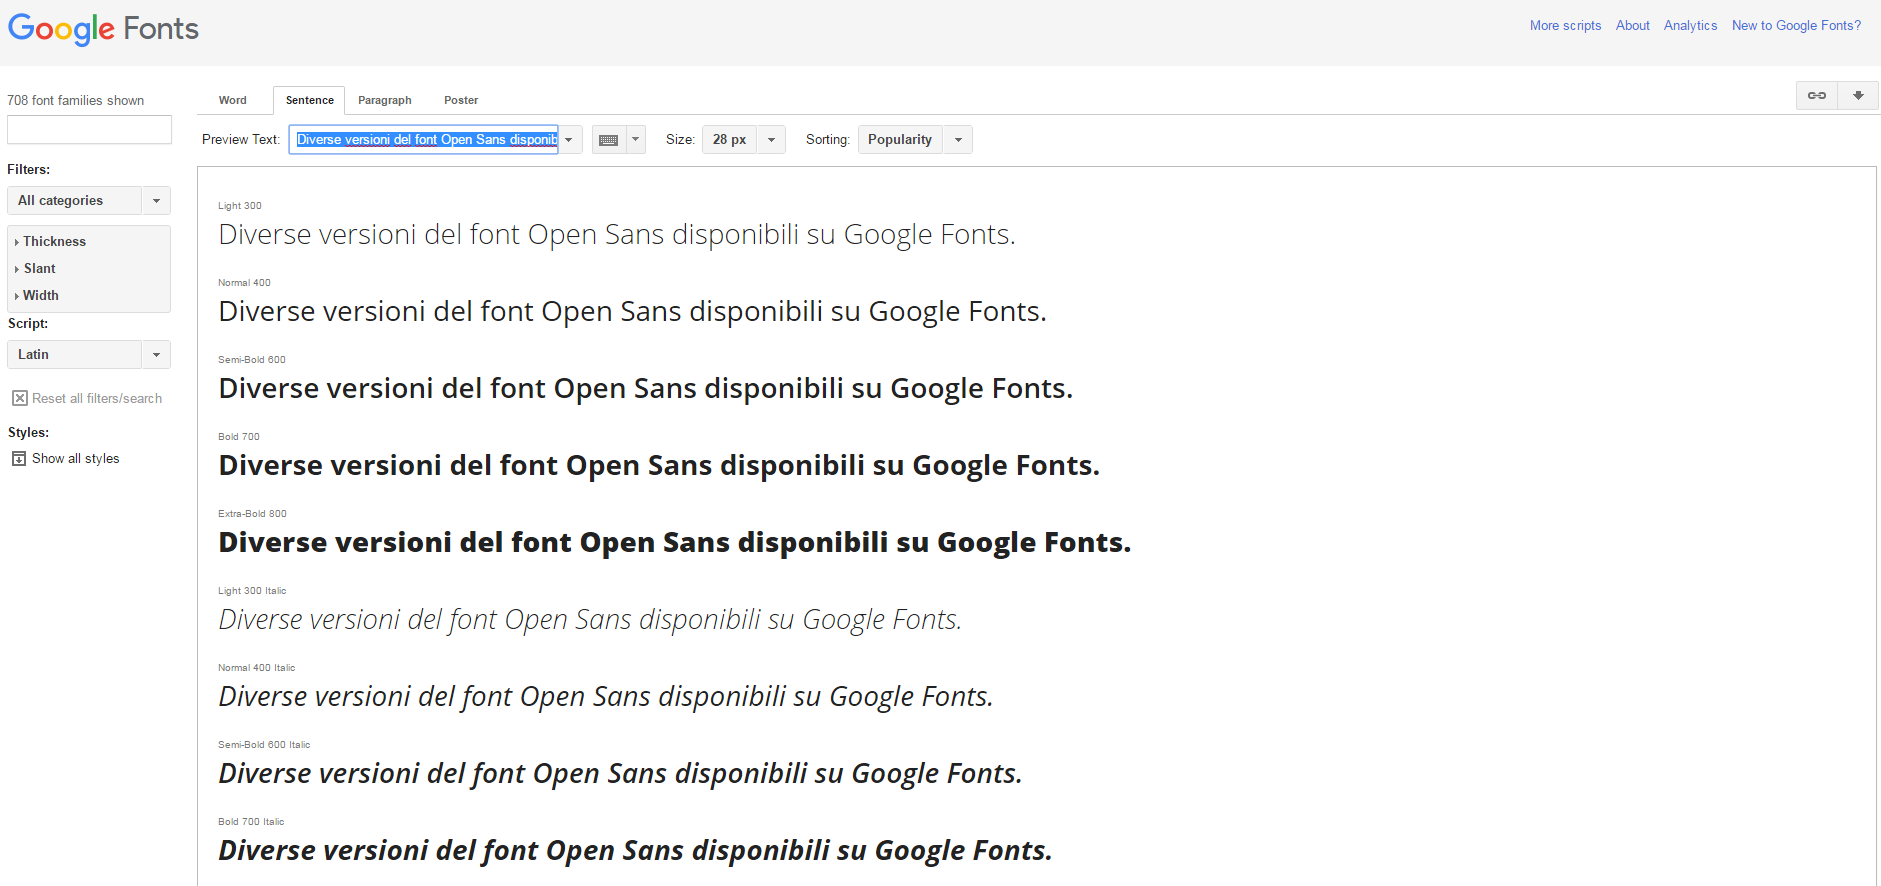 Diverse versioni del font Open Sans disponibili su Google Fonts